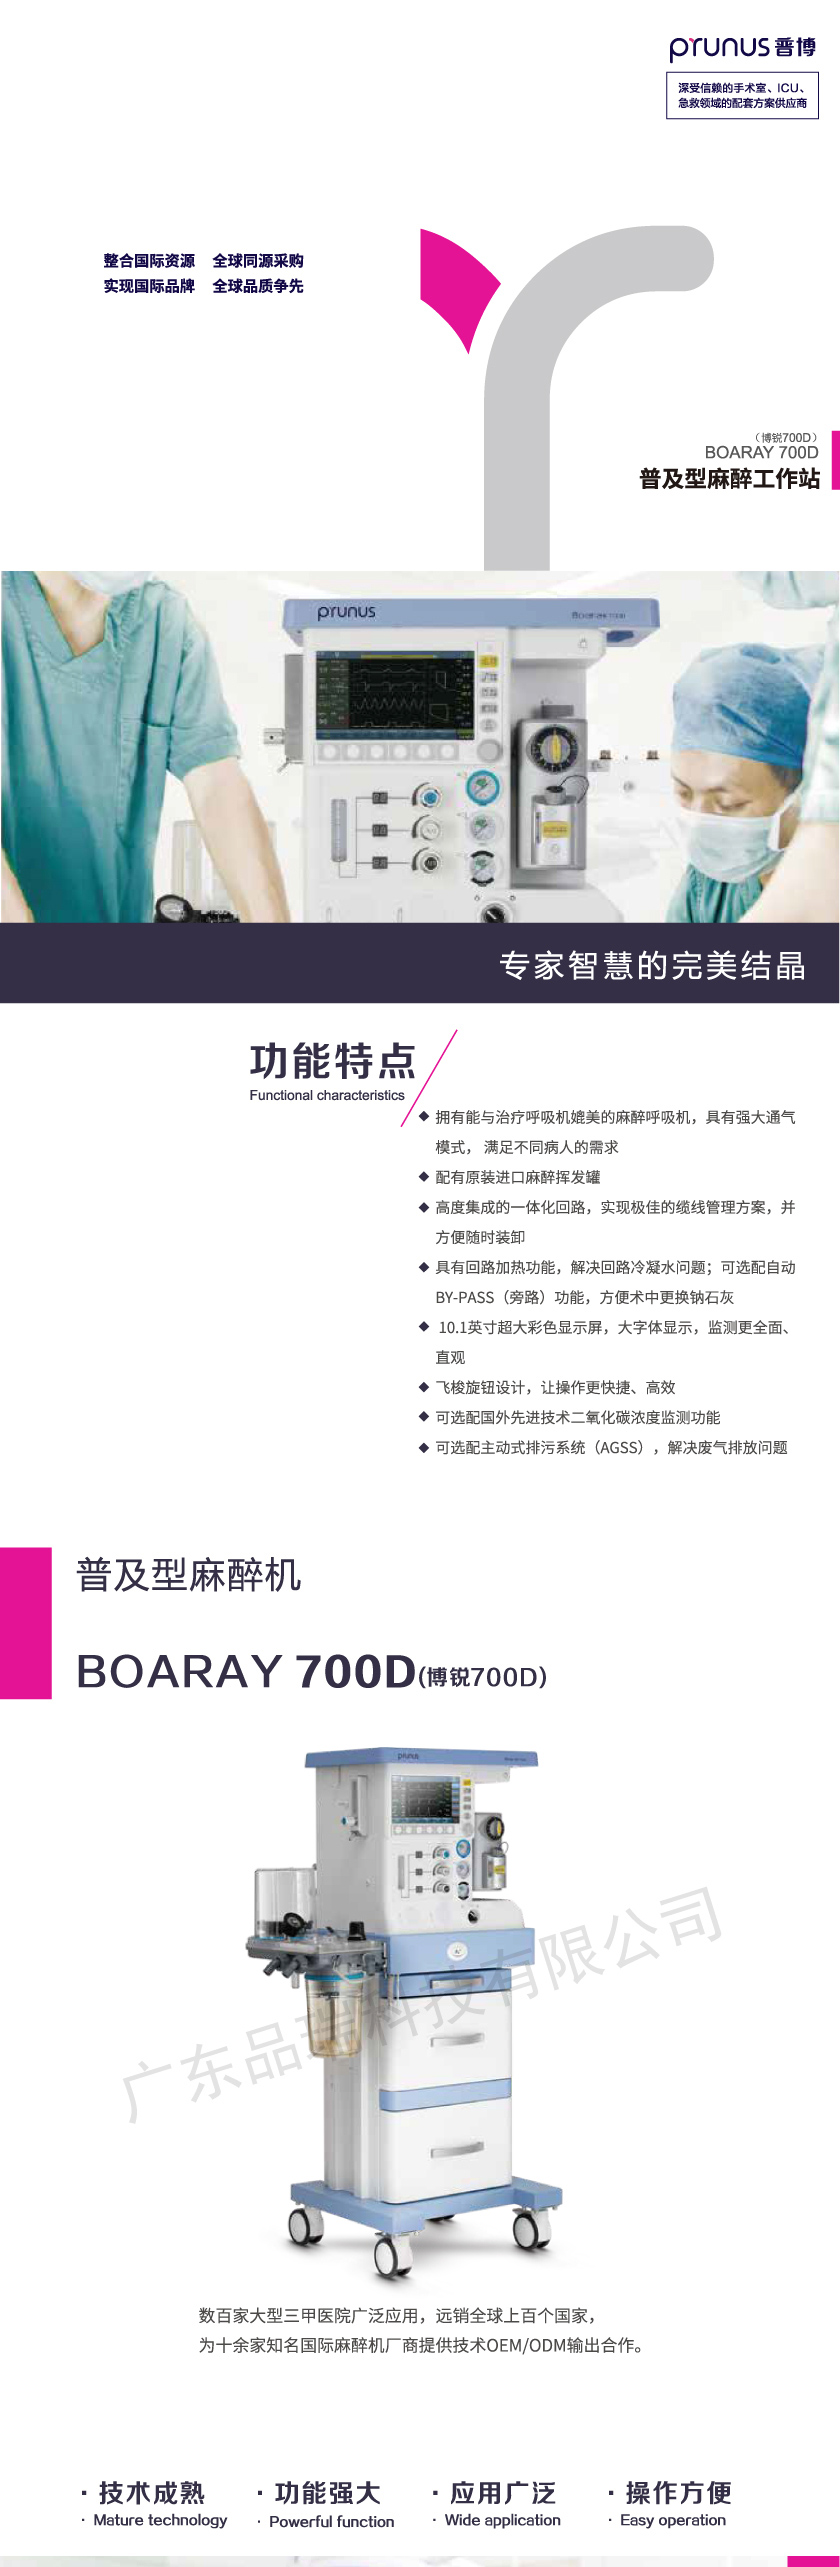 普博 boaray 700D普及型麻醉机